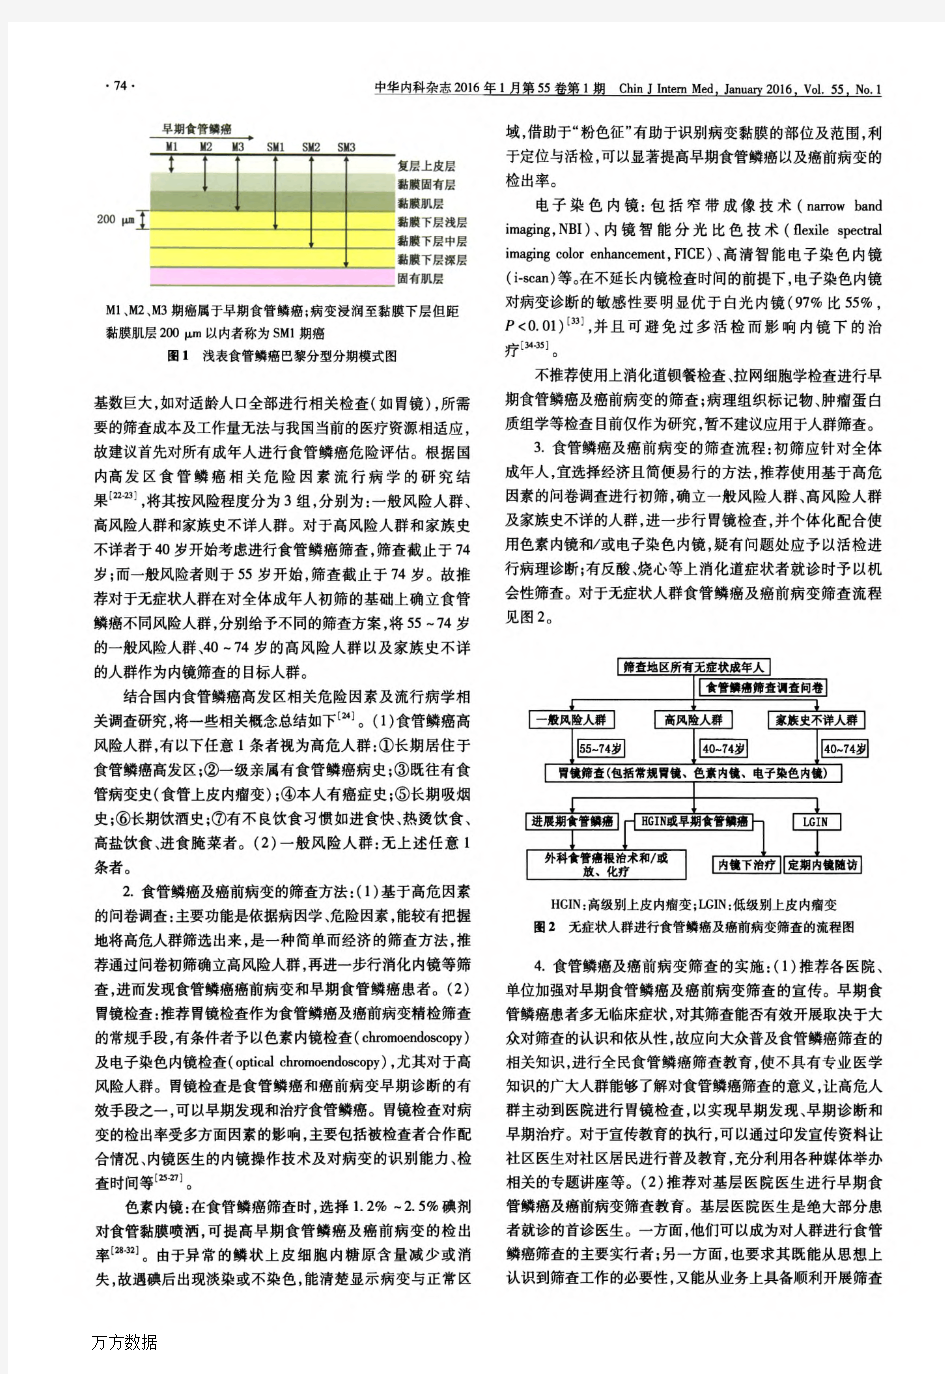 中国早期食管鳞状细胞癌及癌前病变筛查与诊治共识(2015年·北京)